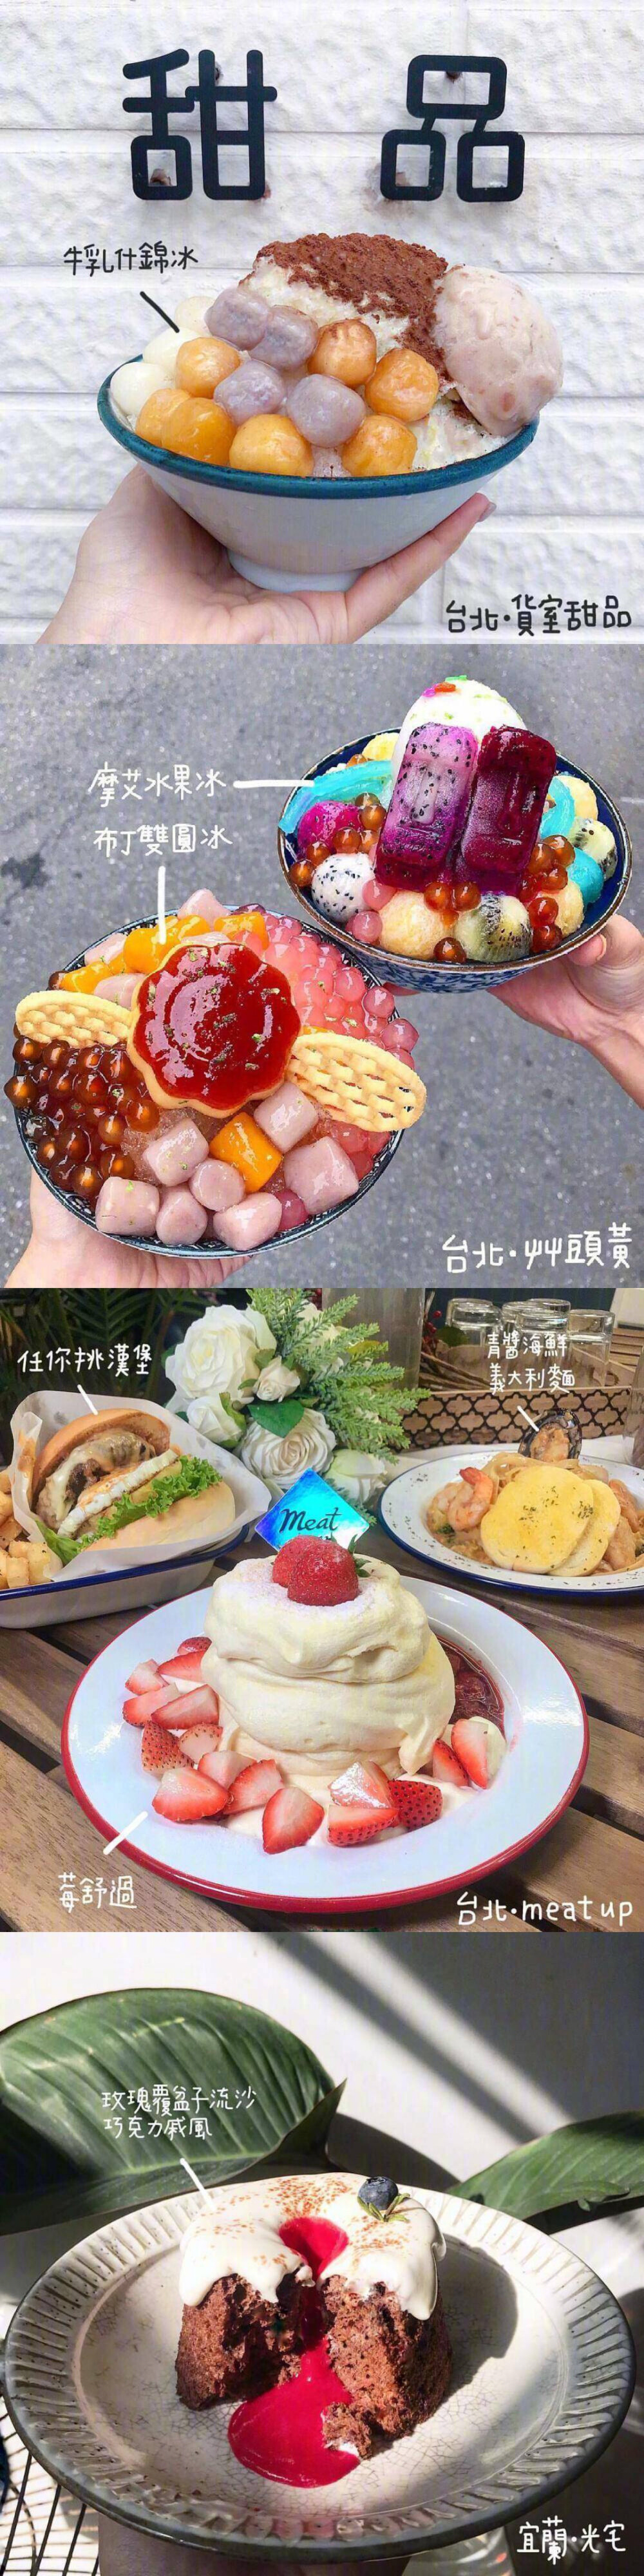 台湾美食
转自微博
